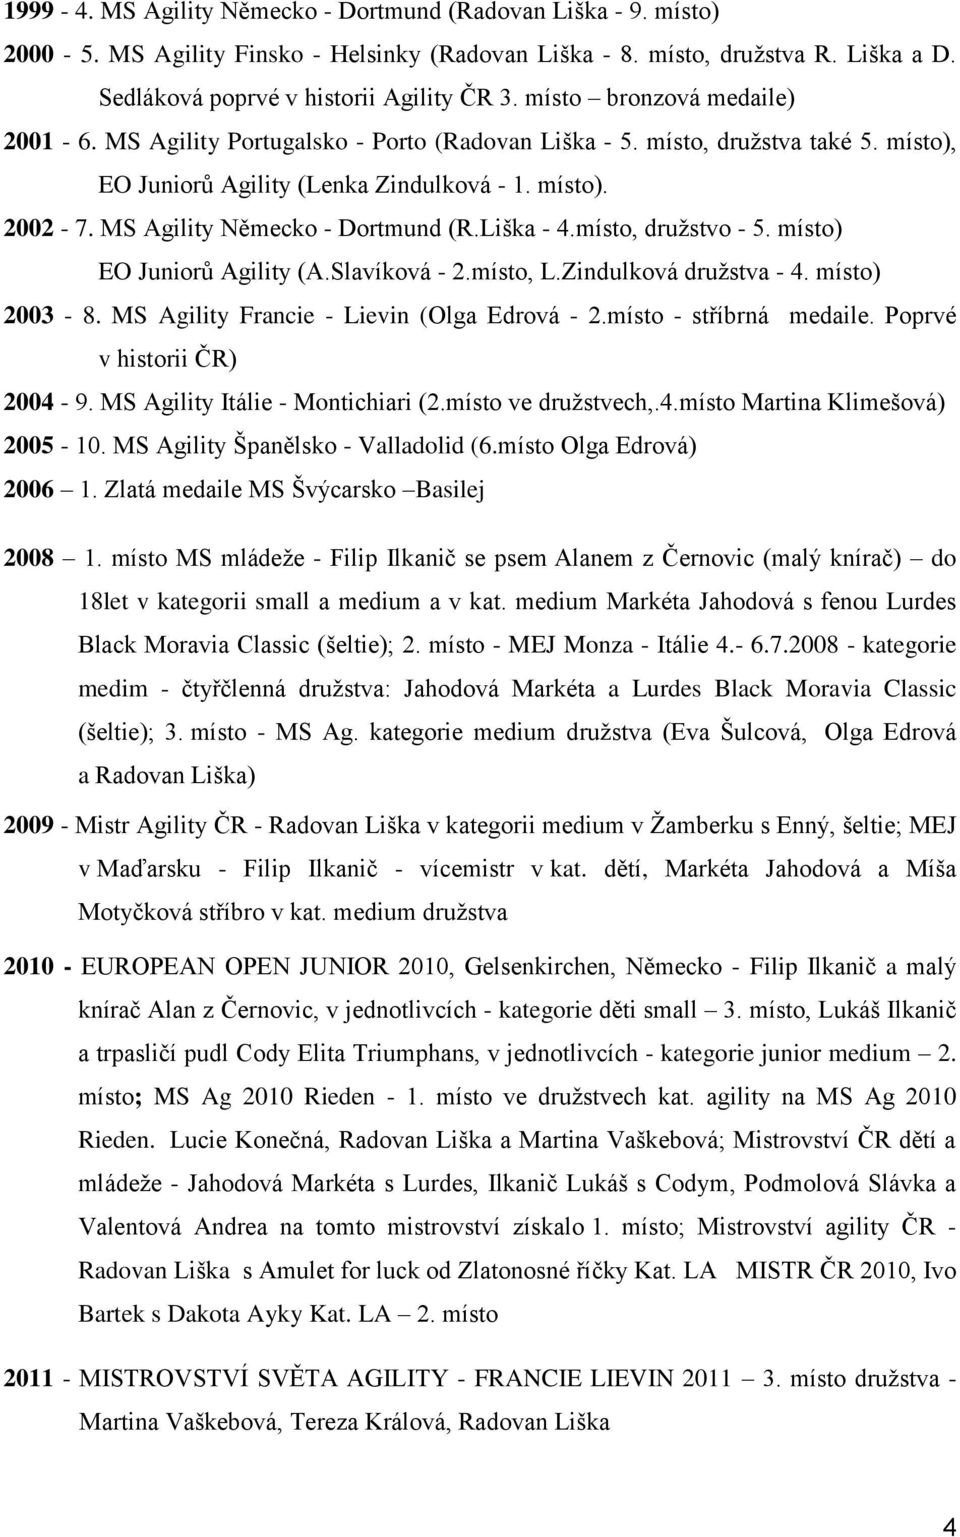 MS Agility Německo - Dortmund (R.Liška - 4.místo, družstvo - 5. místo) EO Juniorů Agility (A.Slavíková - 2.místo, L.Zindulková družstva - 4. místo) 2003-8.